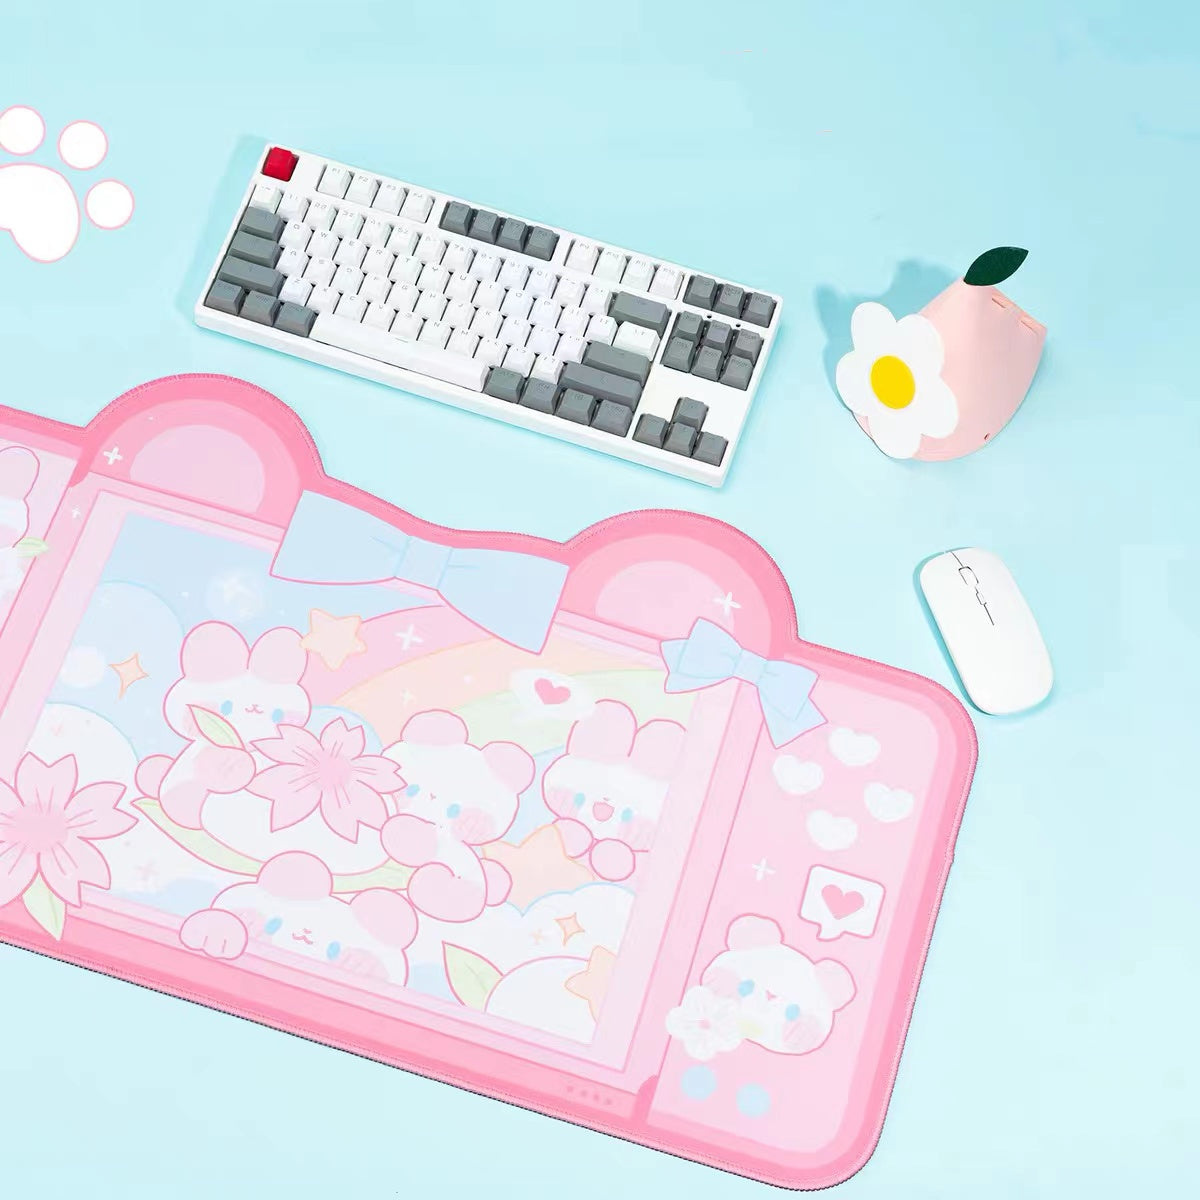 BlingKiyo Rainbow Bunny Large Mouse Pad / Desk Mat